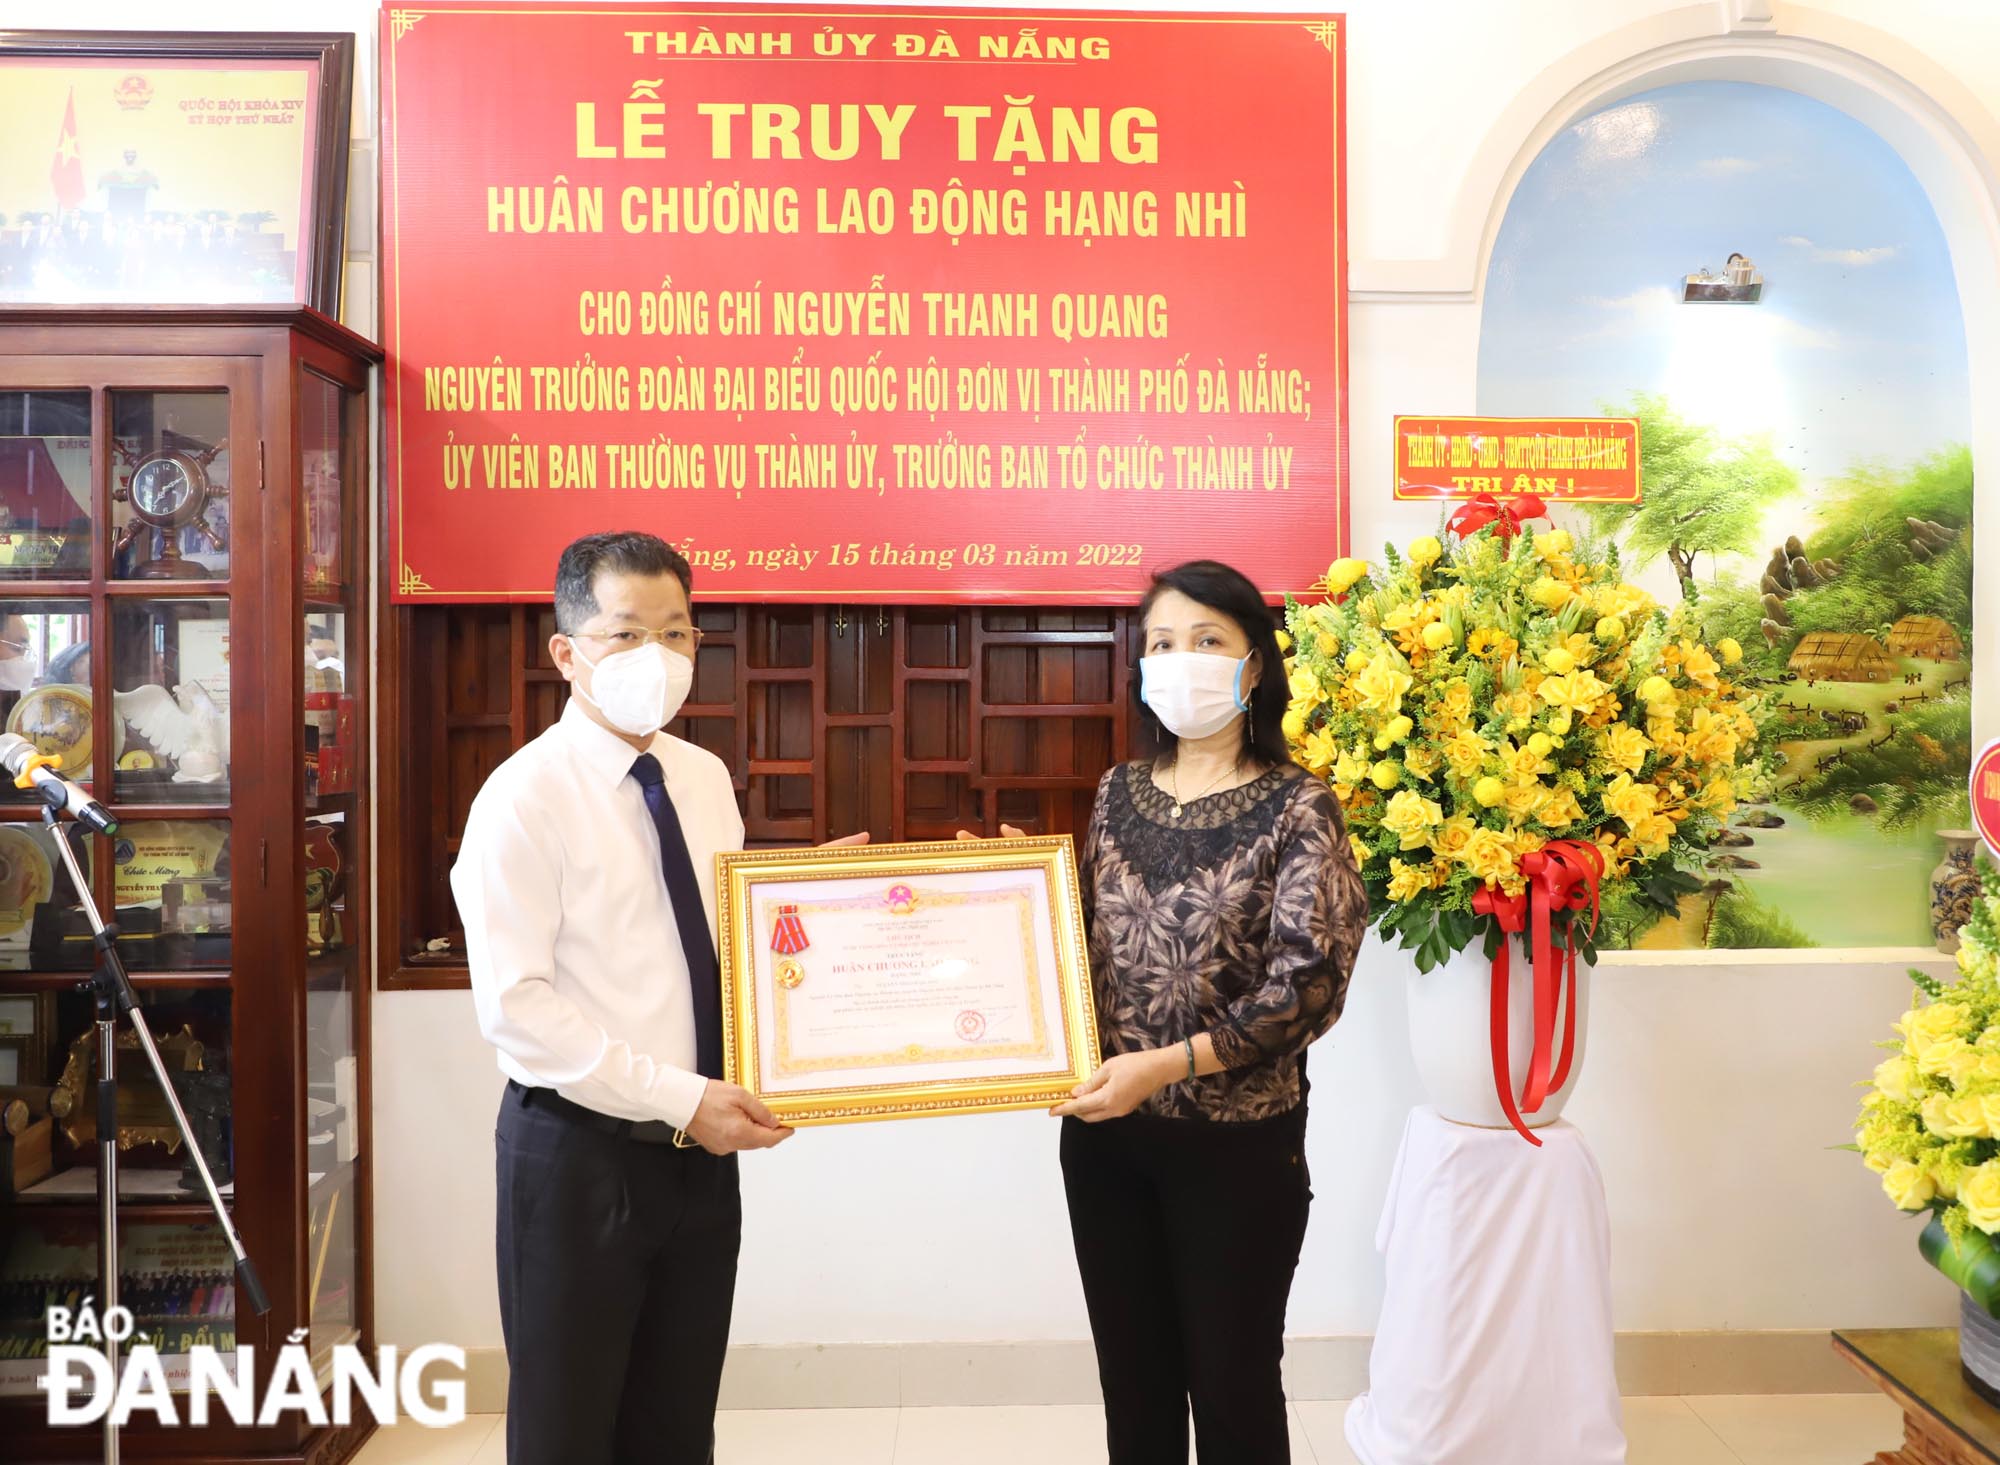 Truy tặng Huân chương Lao động hạng Nhì cho đồng chí Nguyễn Thanh Quang, nguyên Trưởng ban Tổ chức Thành ủy